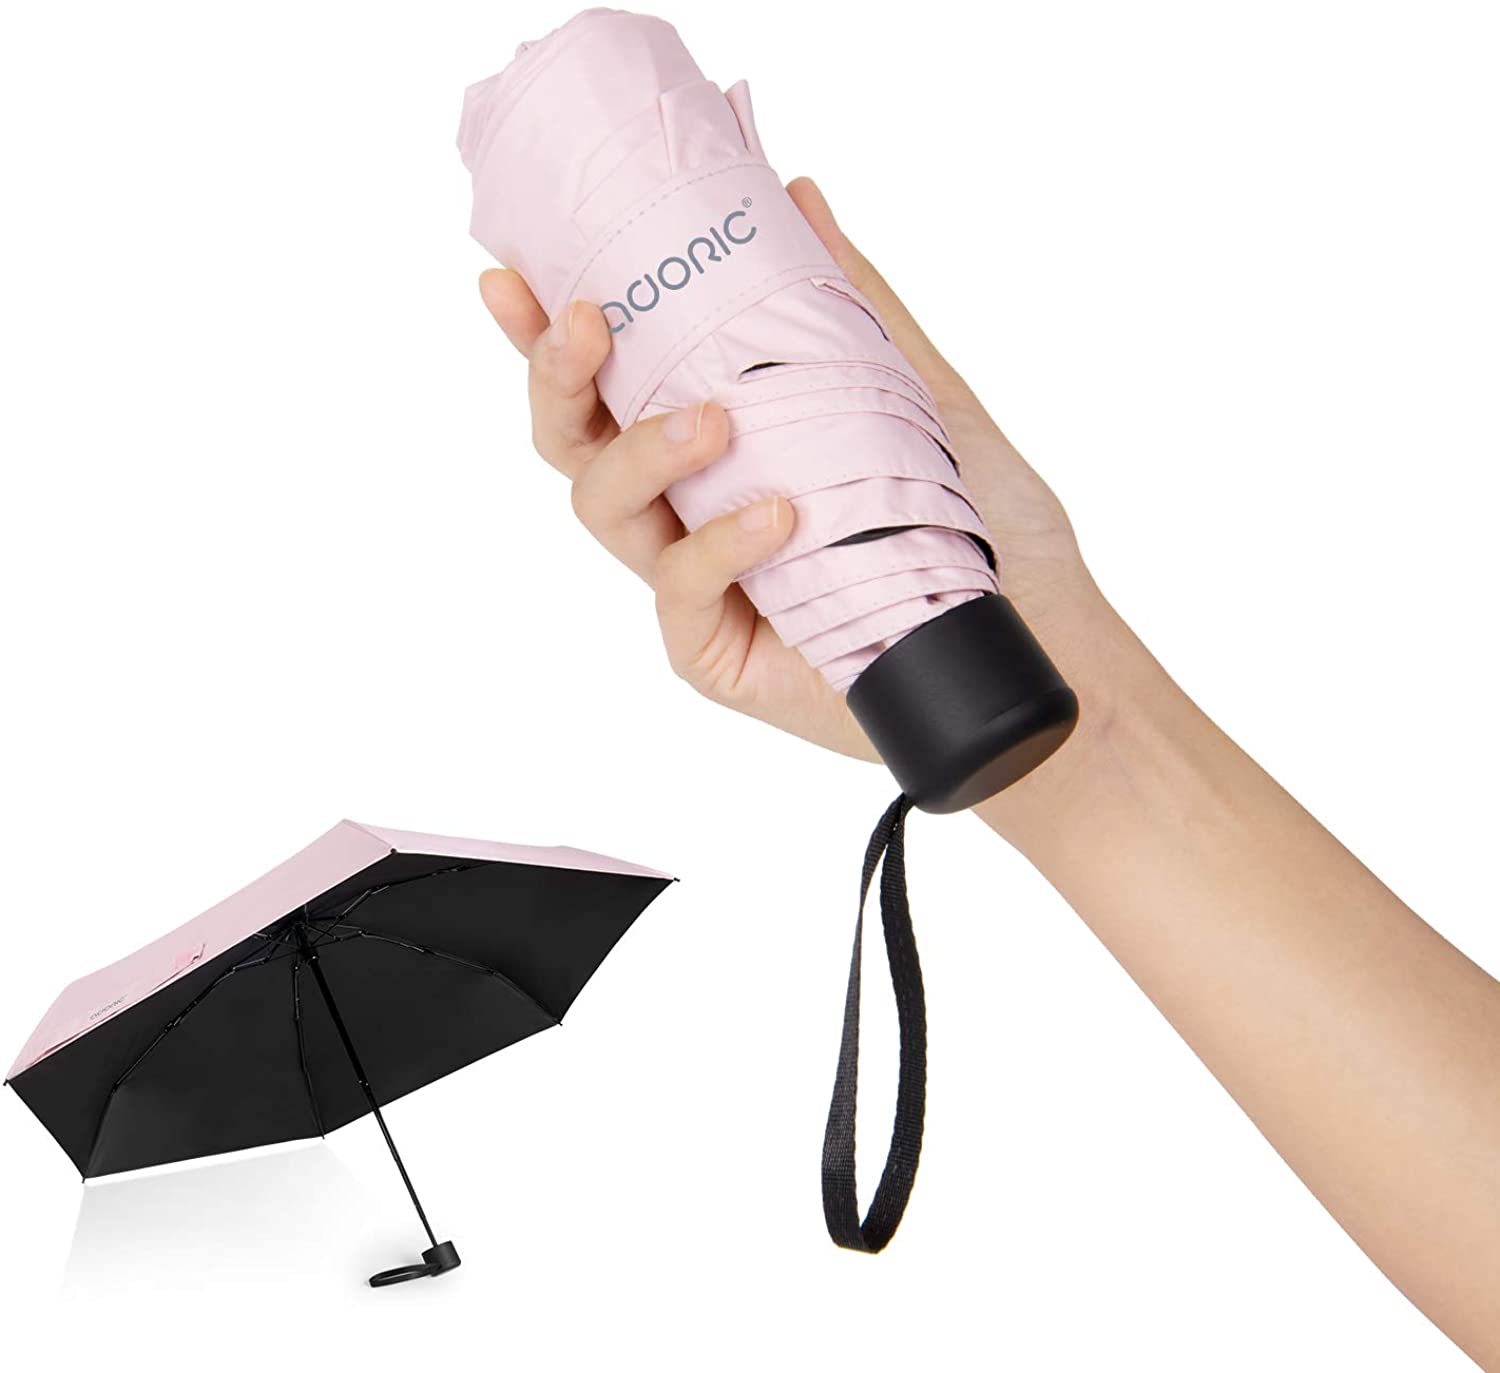 【日本代購-現貨】Auoric 折疊傘 超輕 183g 遮擋UV率 99%遮熱 晴雨兩用 淡粉